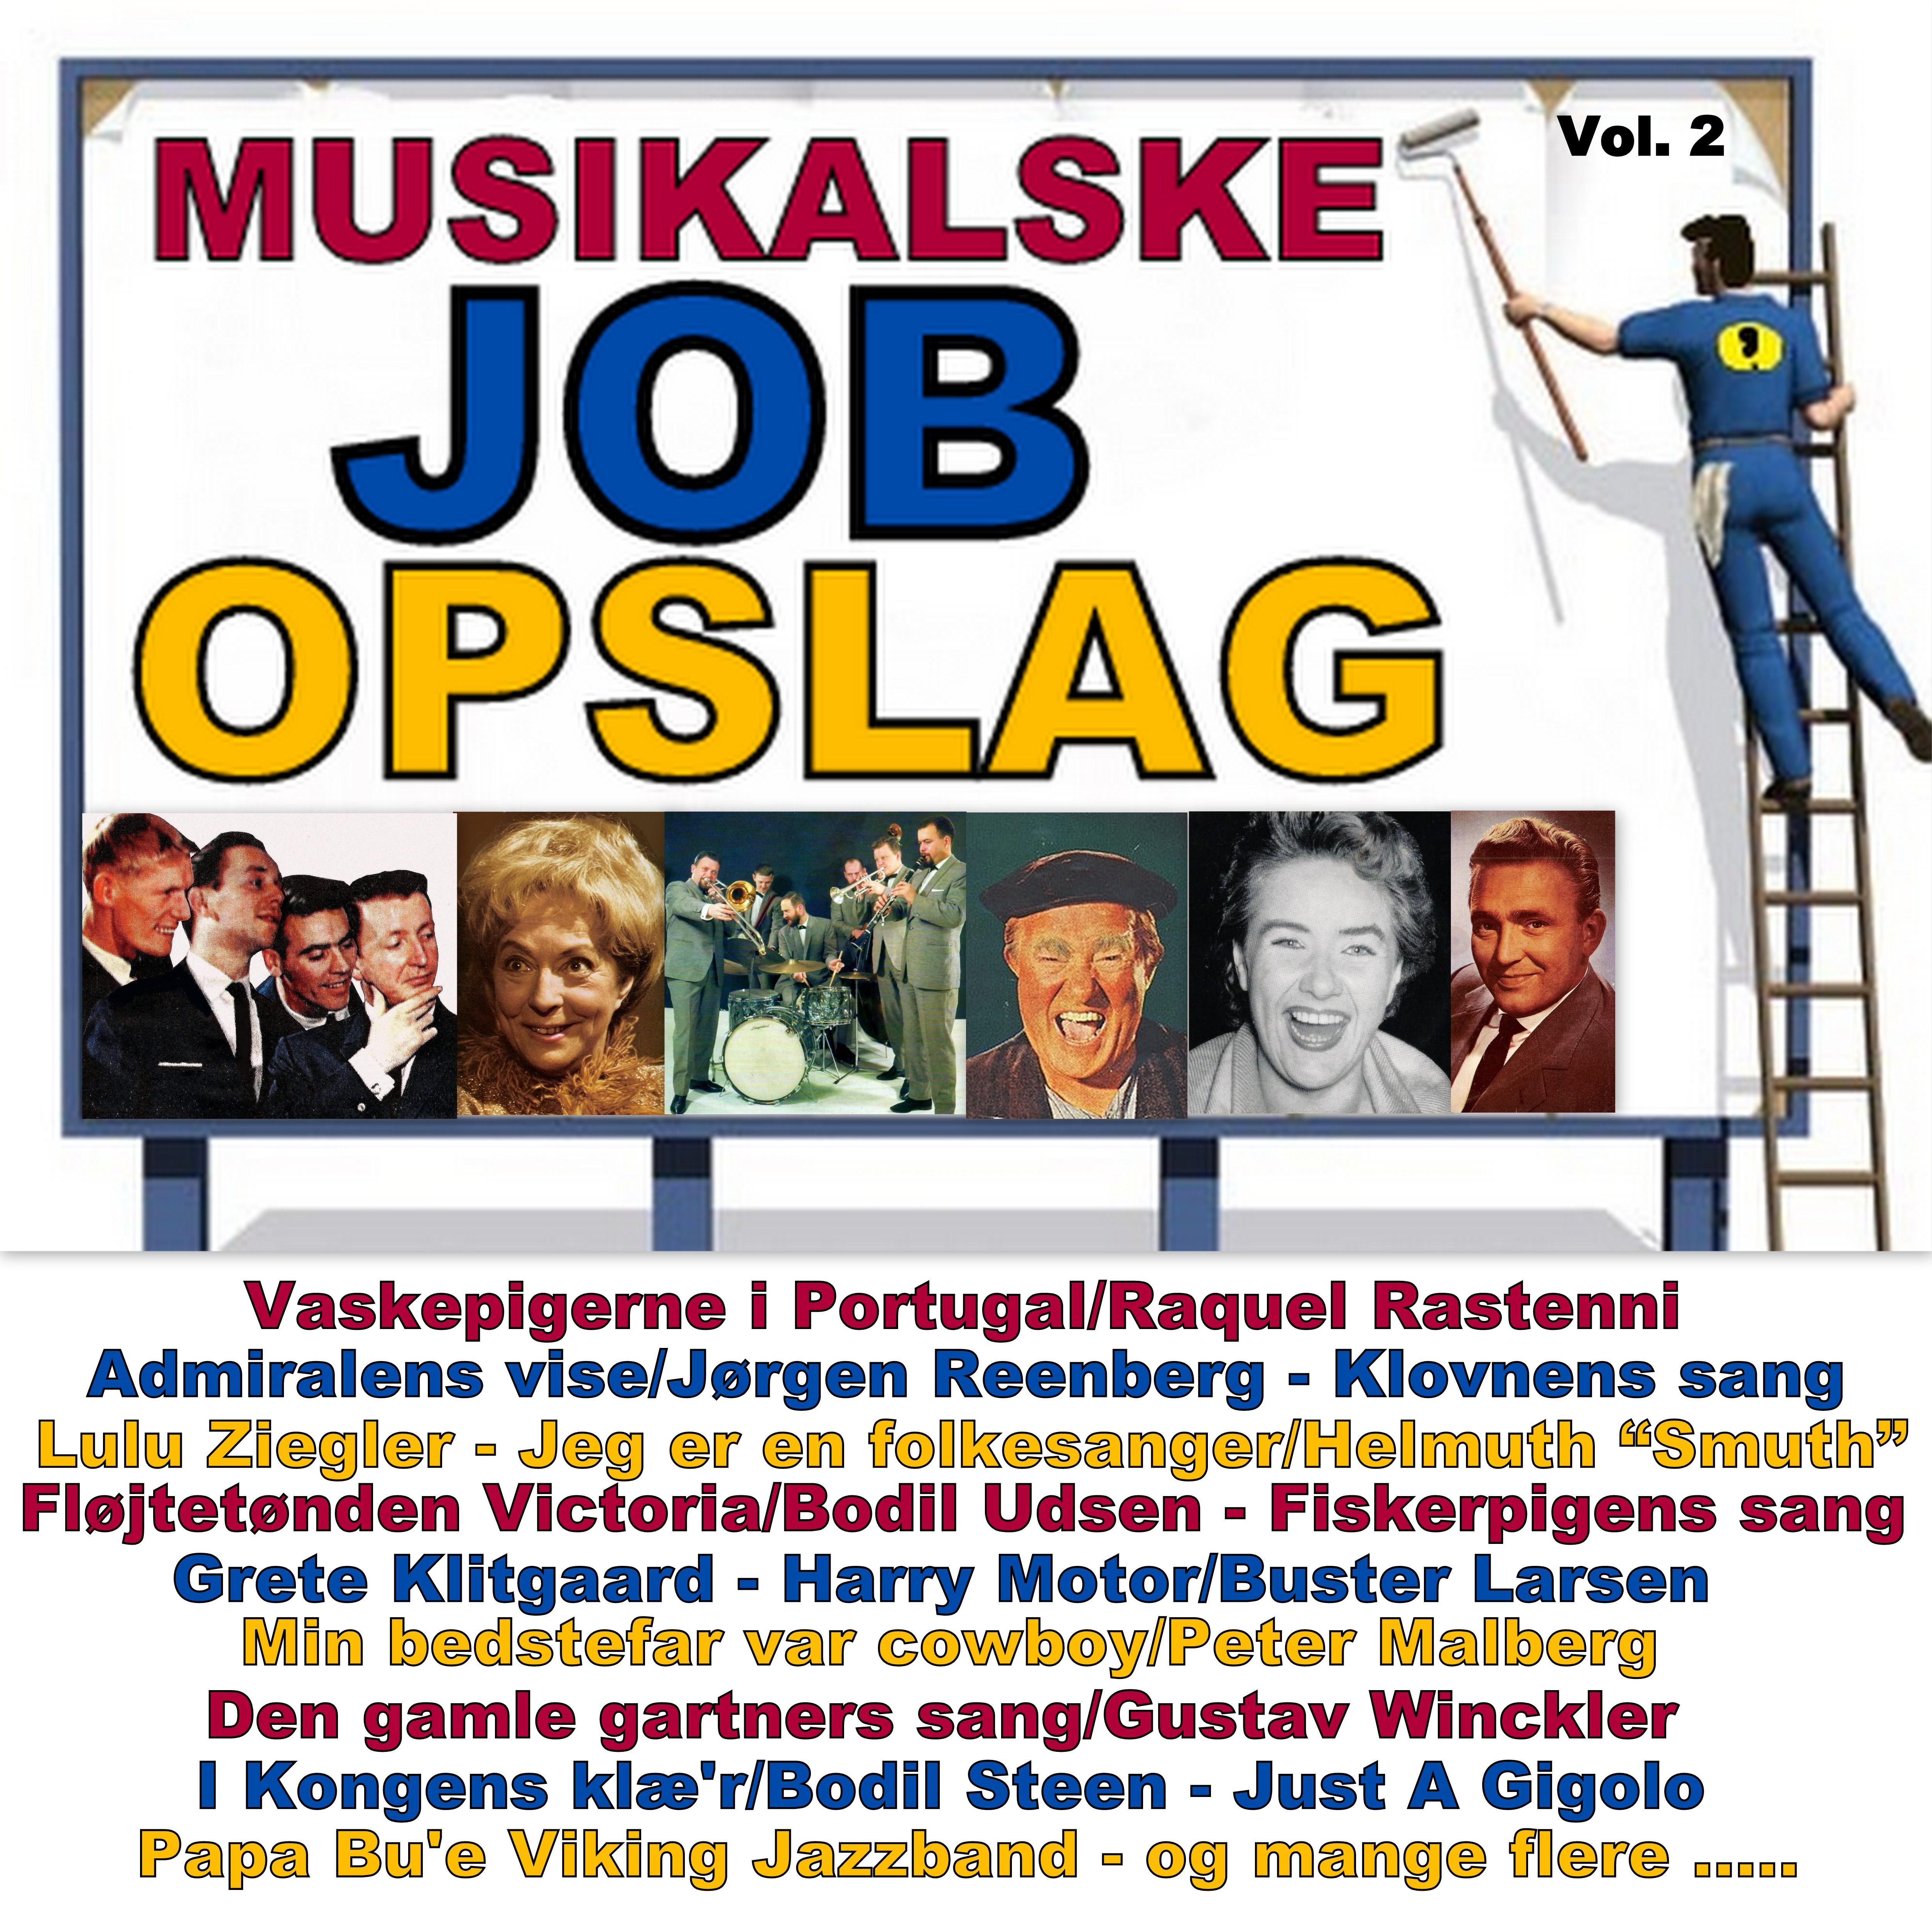 Musikalske Job Opslag Vol. 2